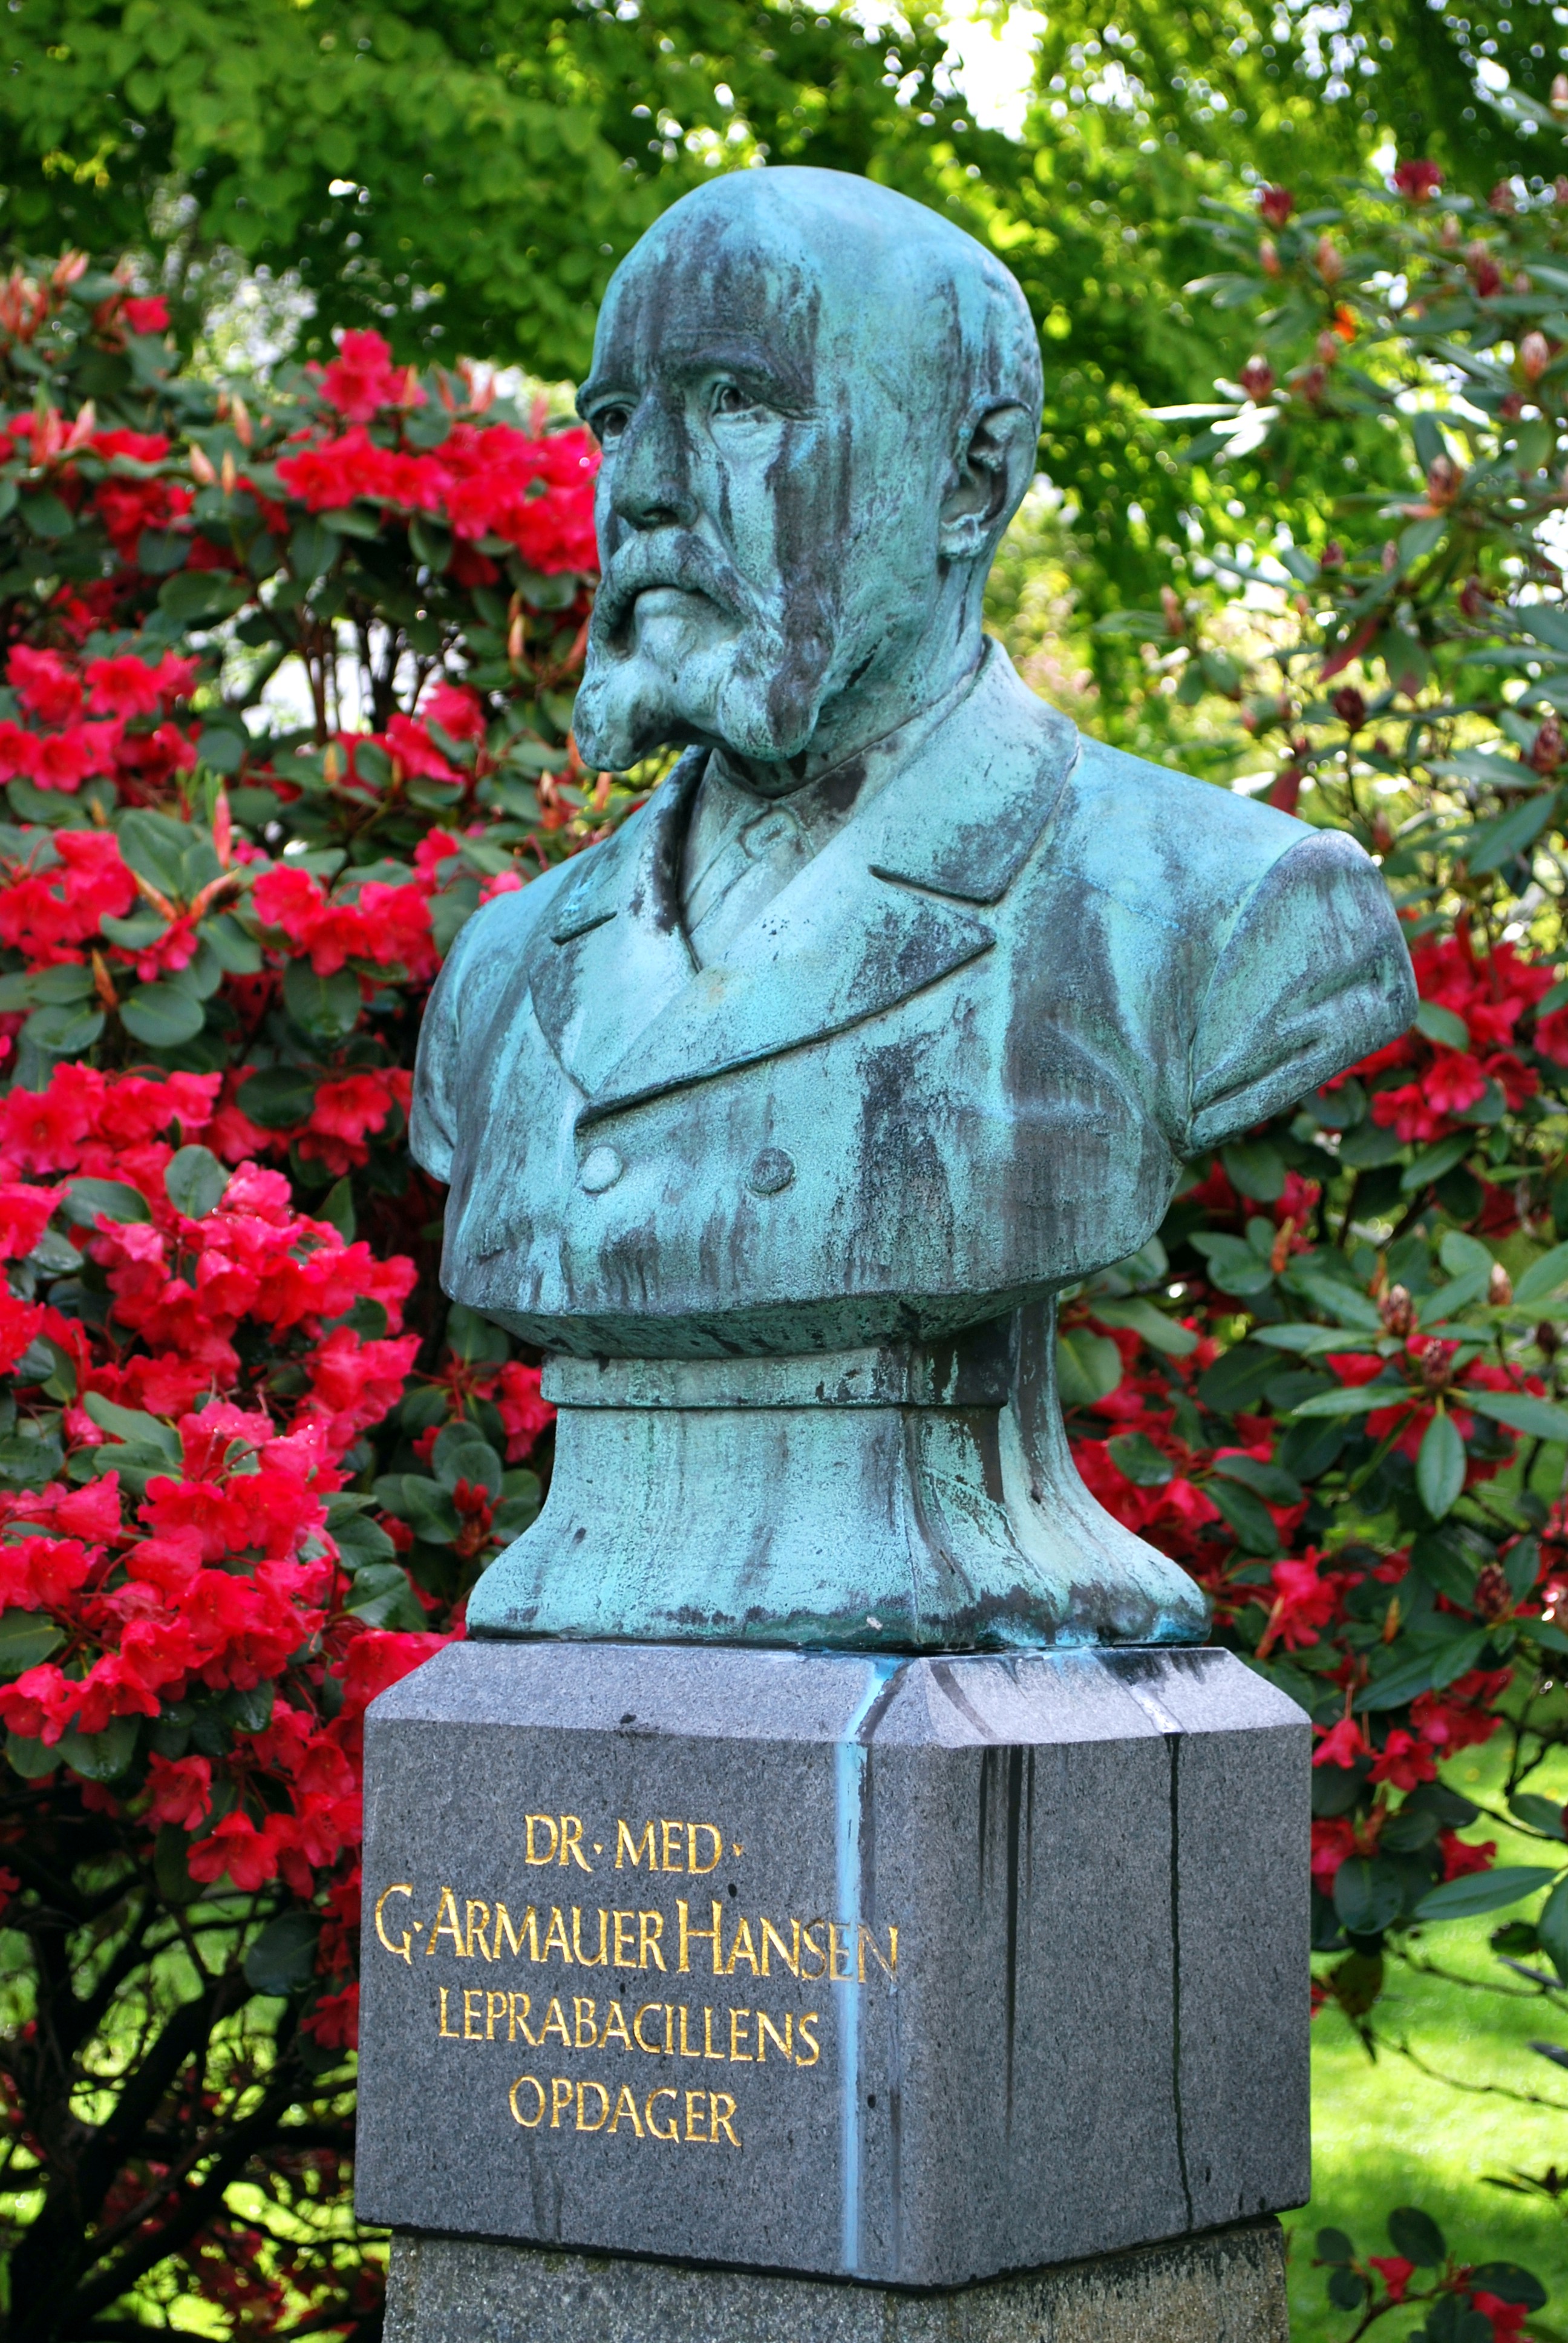 Armauer Hansen - Jo Visdal - Botanisk hage - Bergen 3